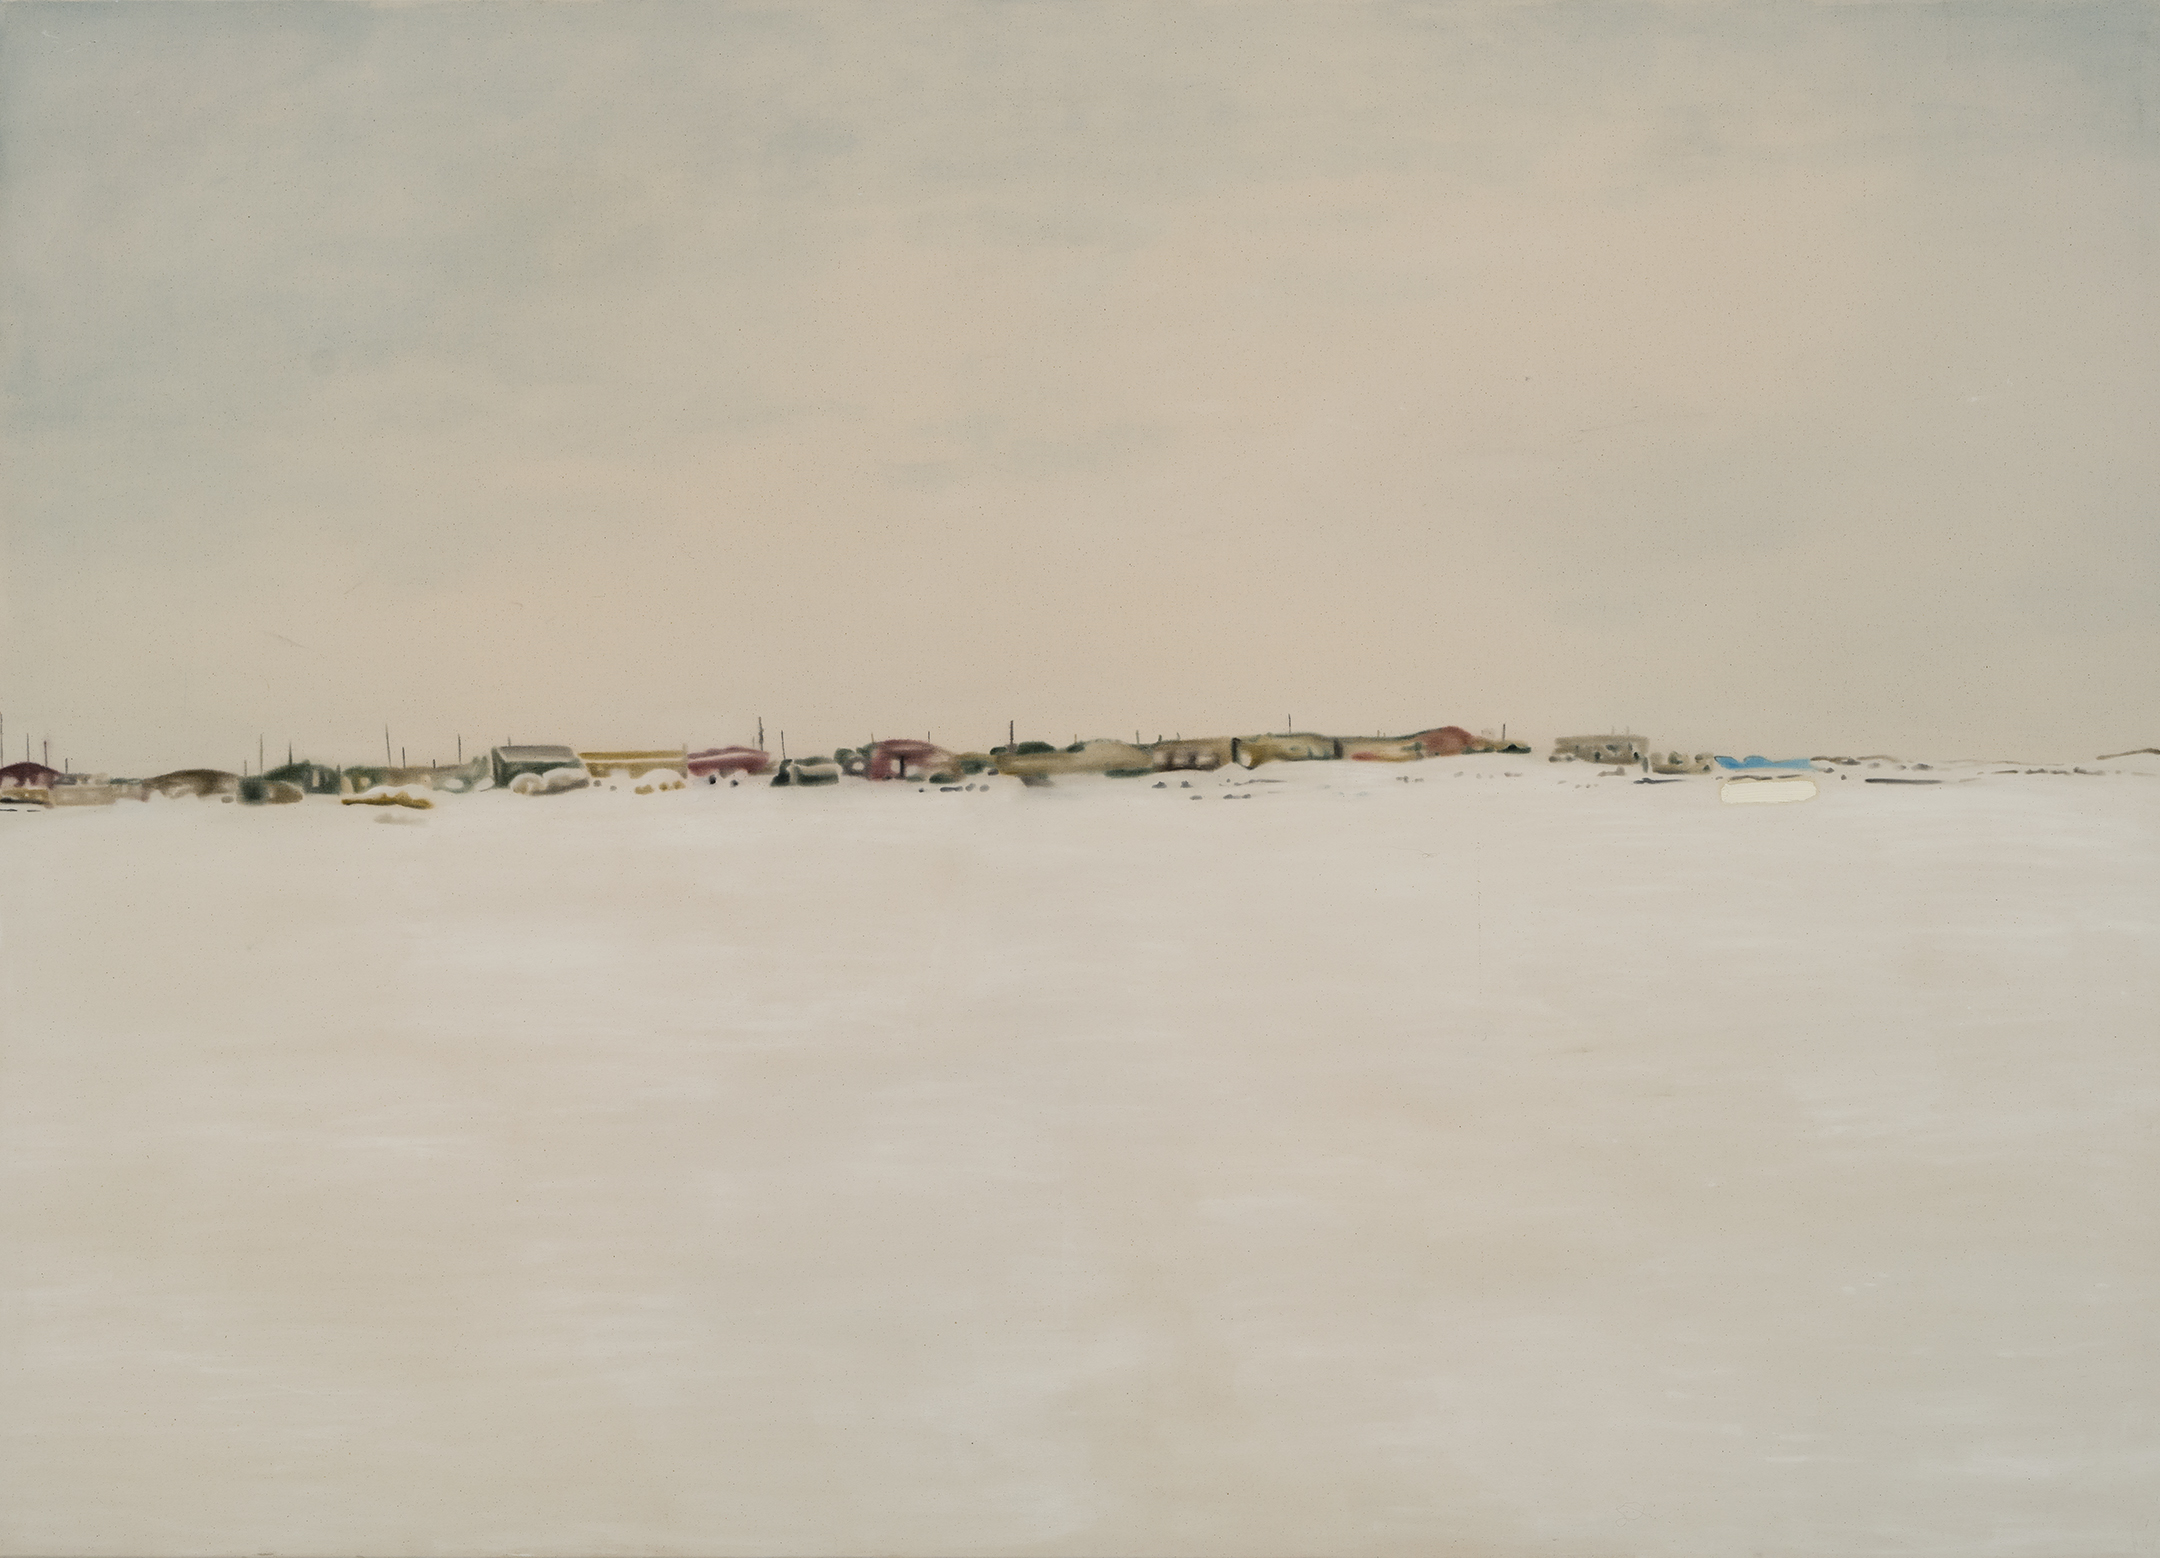   Paysage nordique 3 , 2016. Huile et fusain sur toile, 60 x 84 pouces 